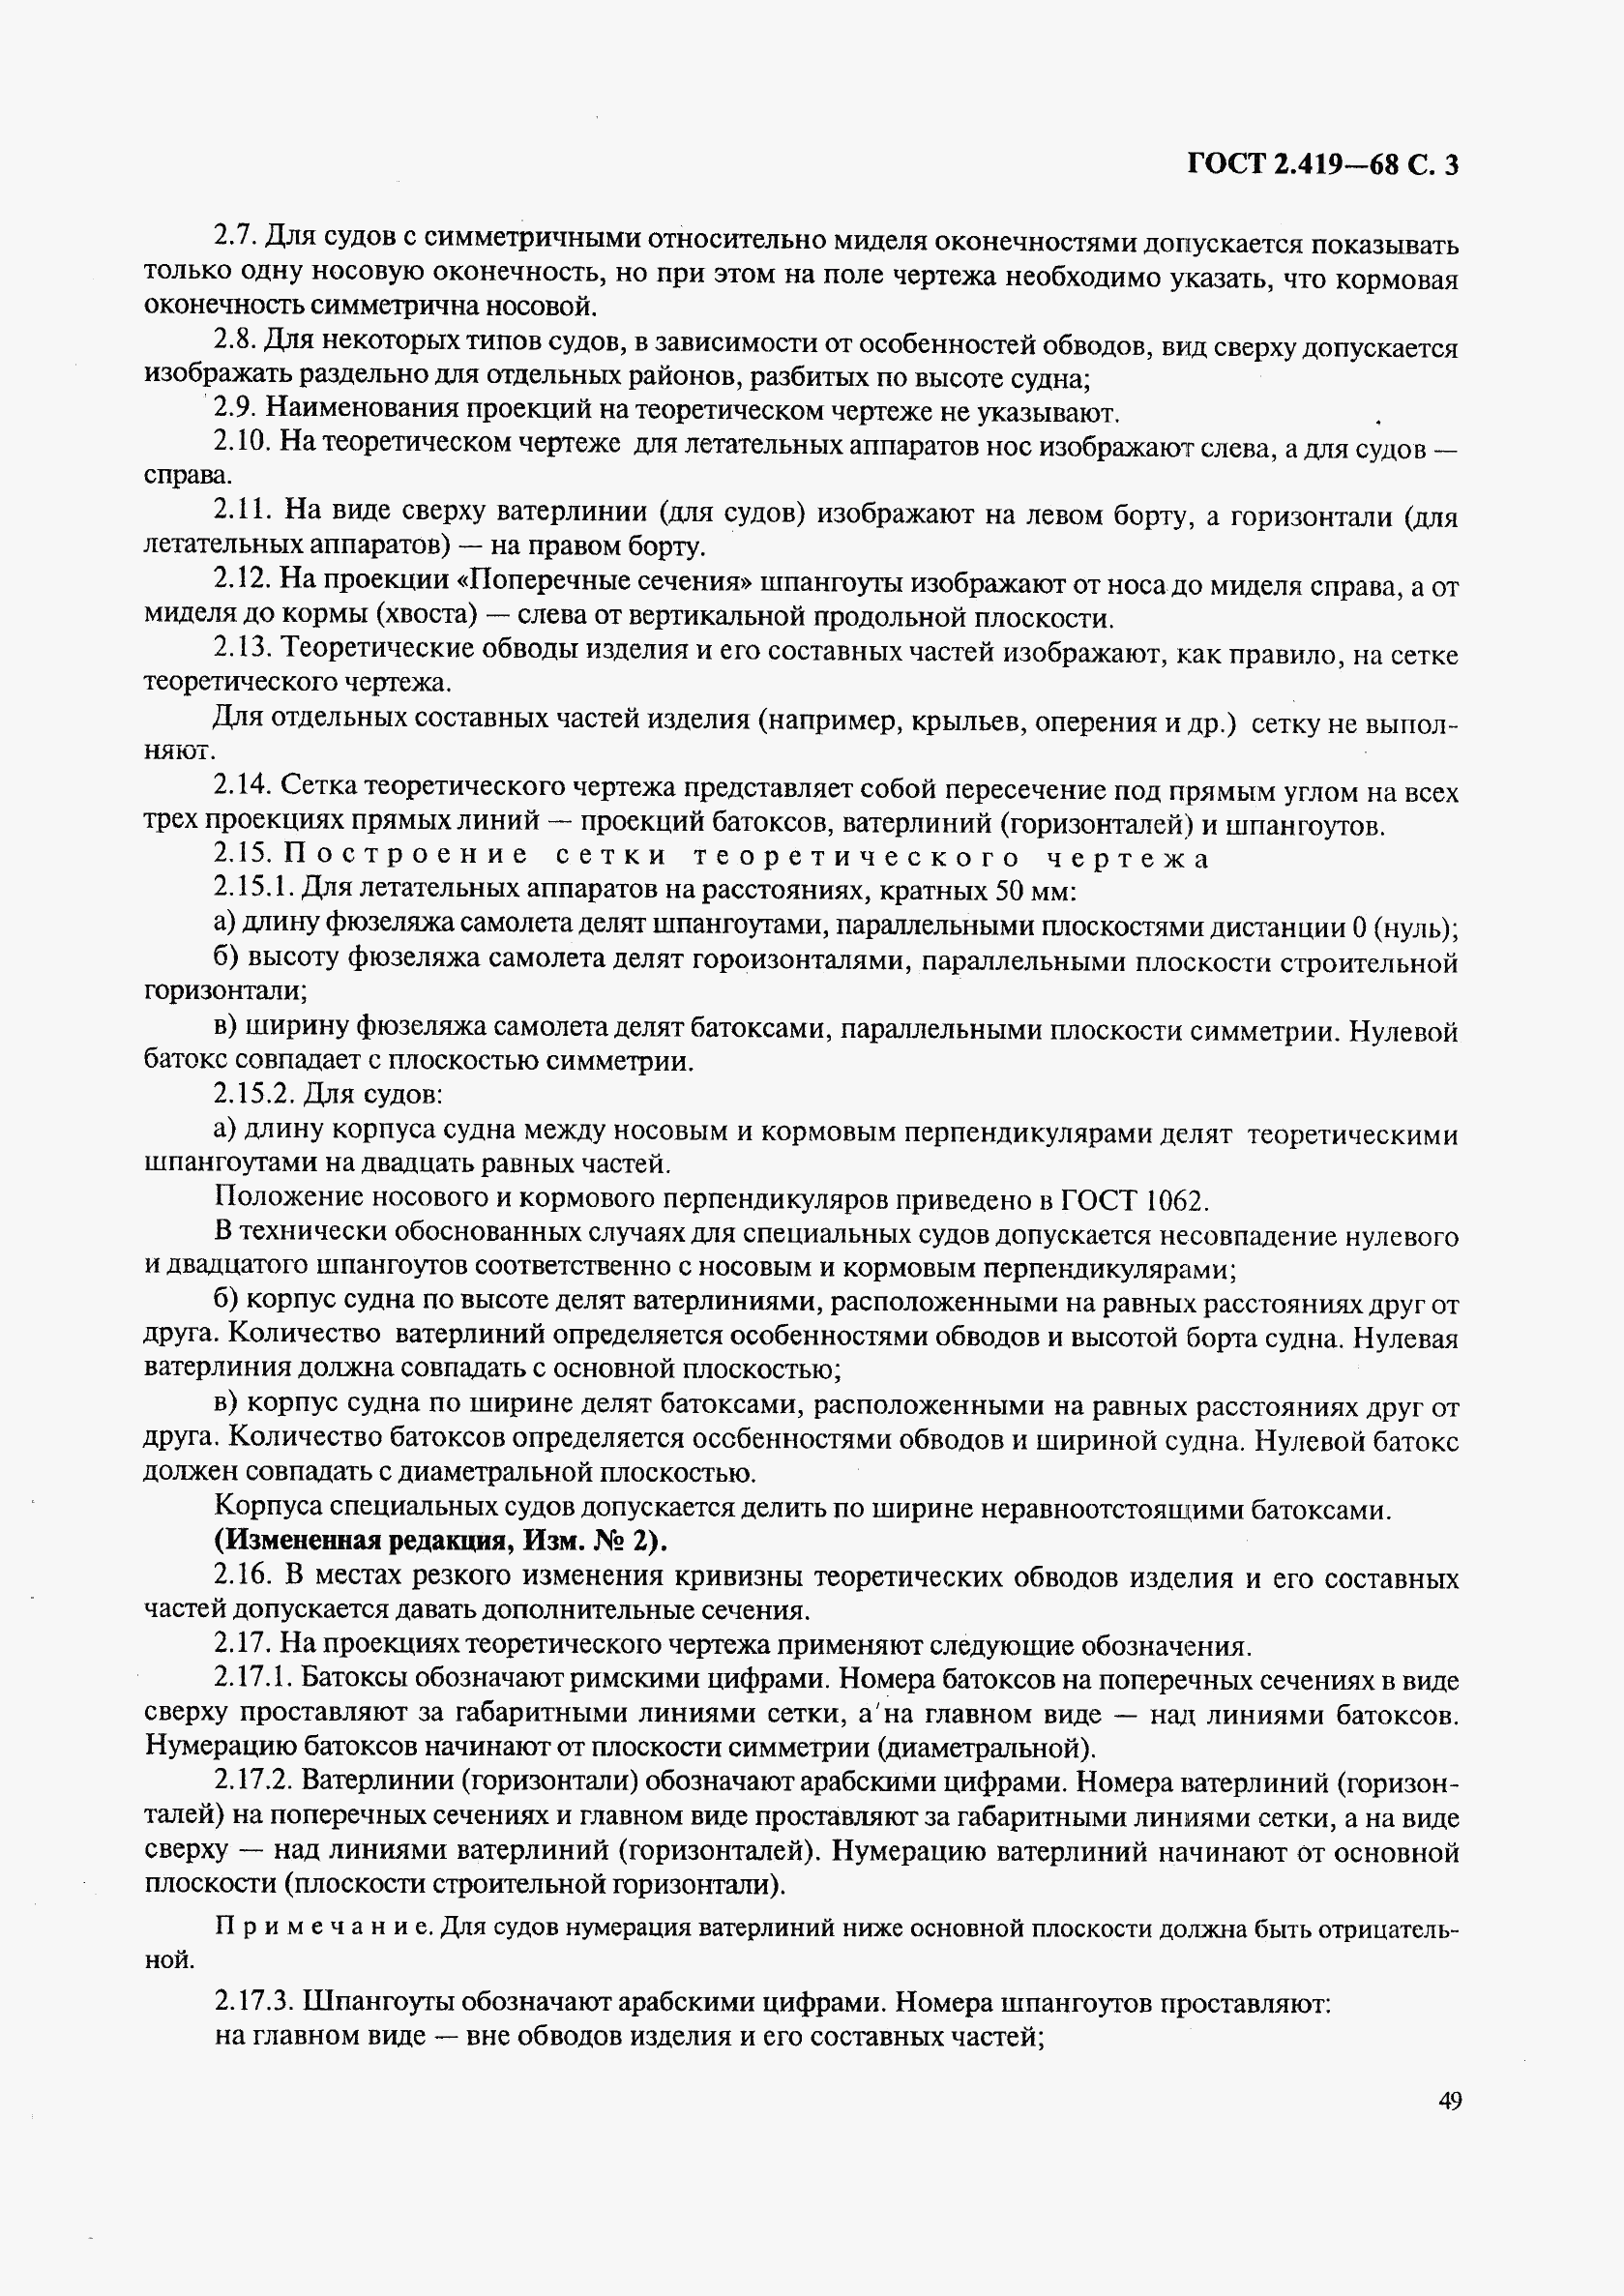 ГОСТ 2.419-68, страница 3